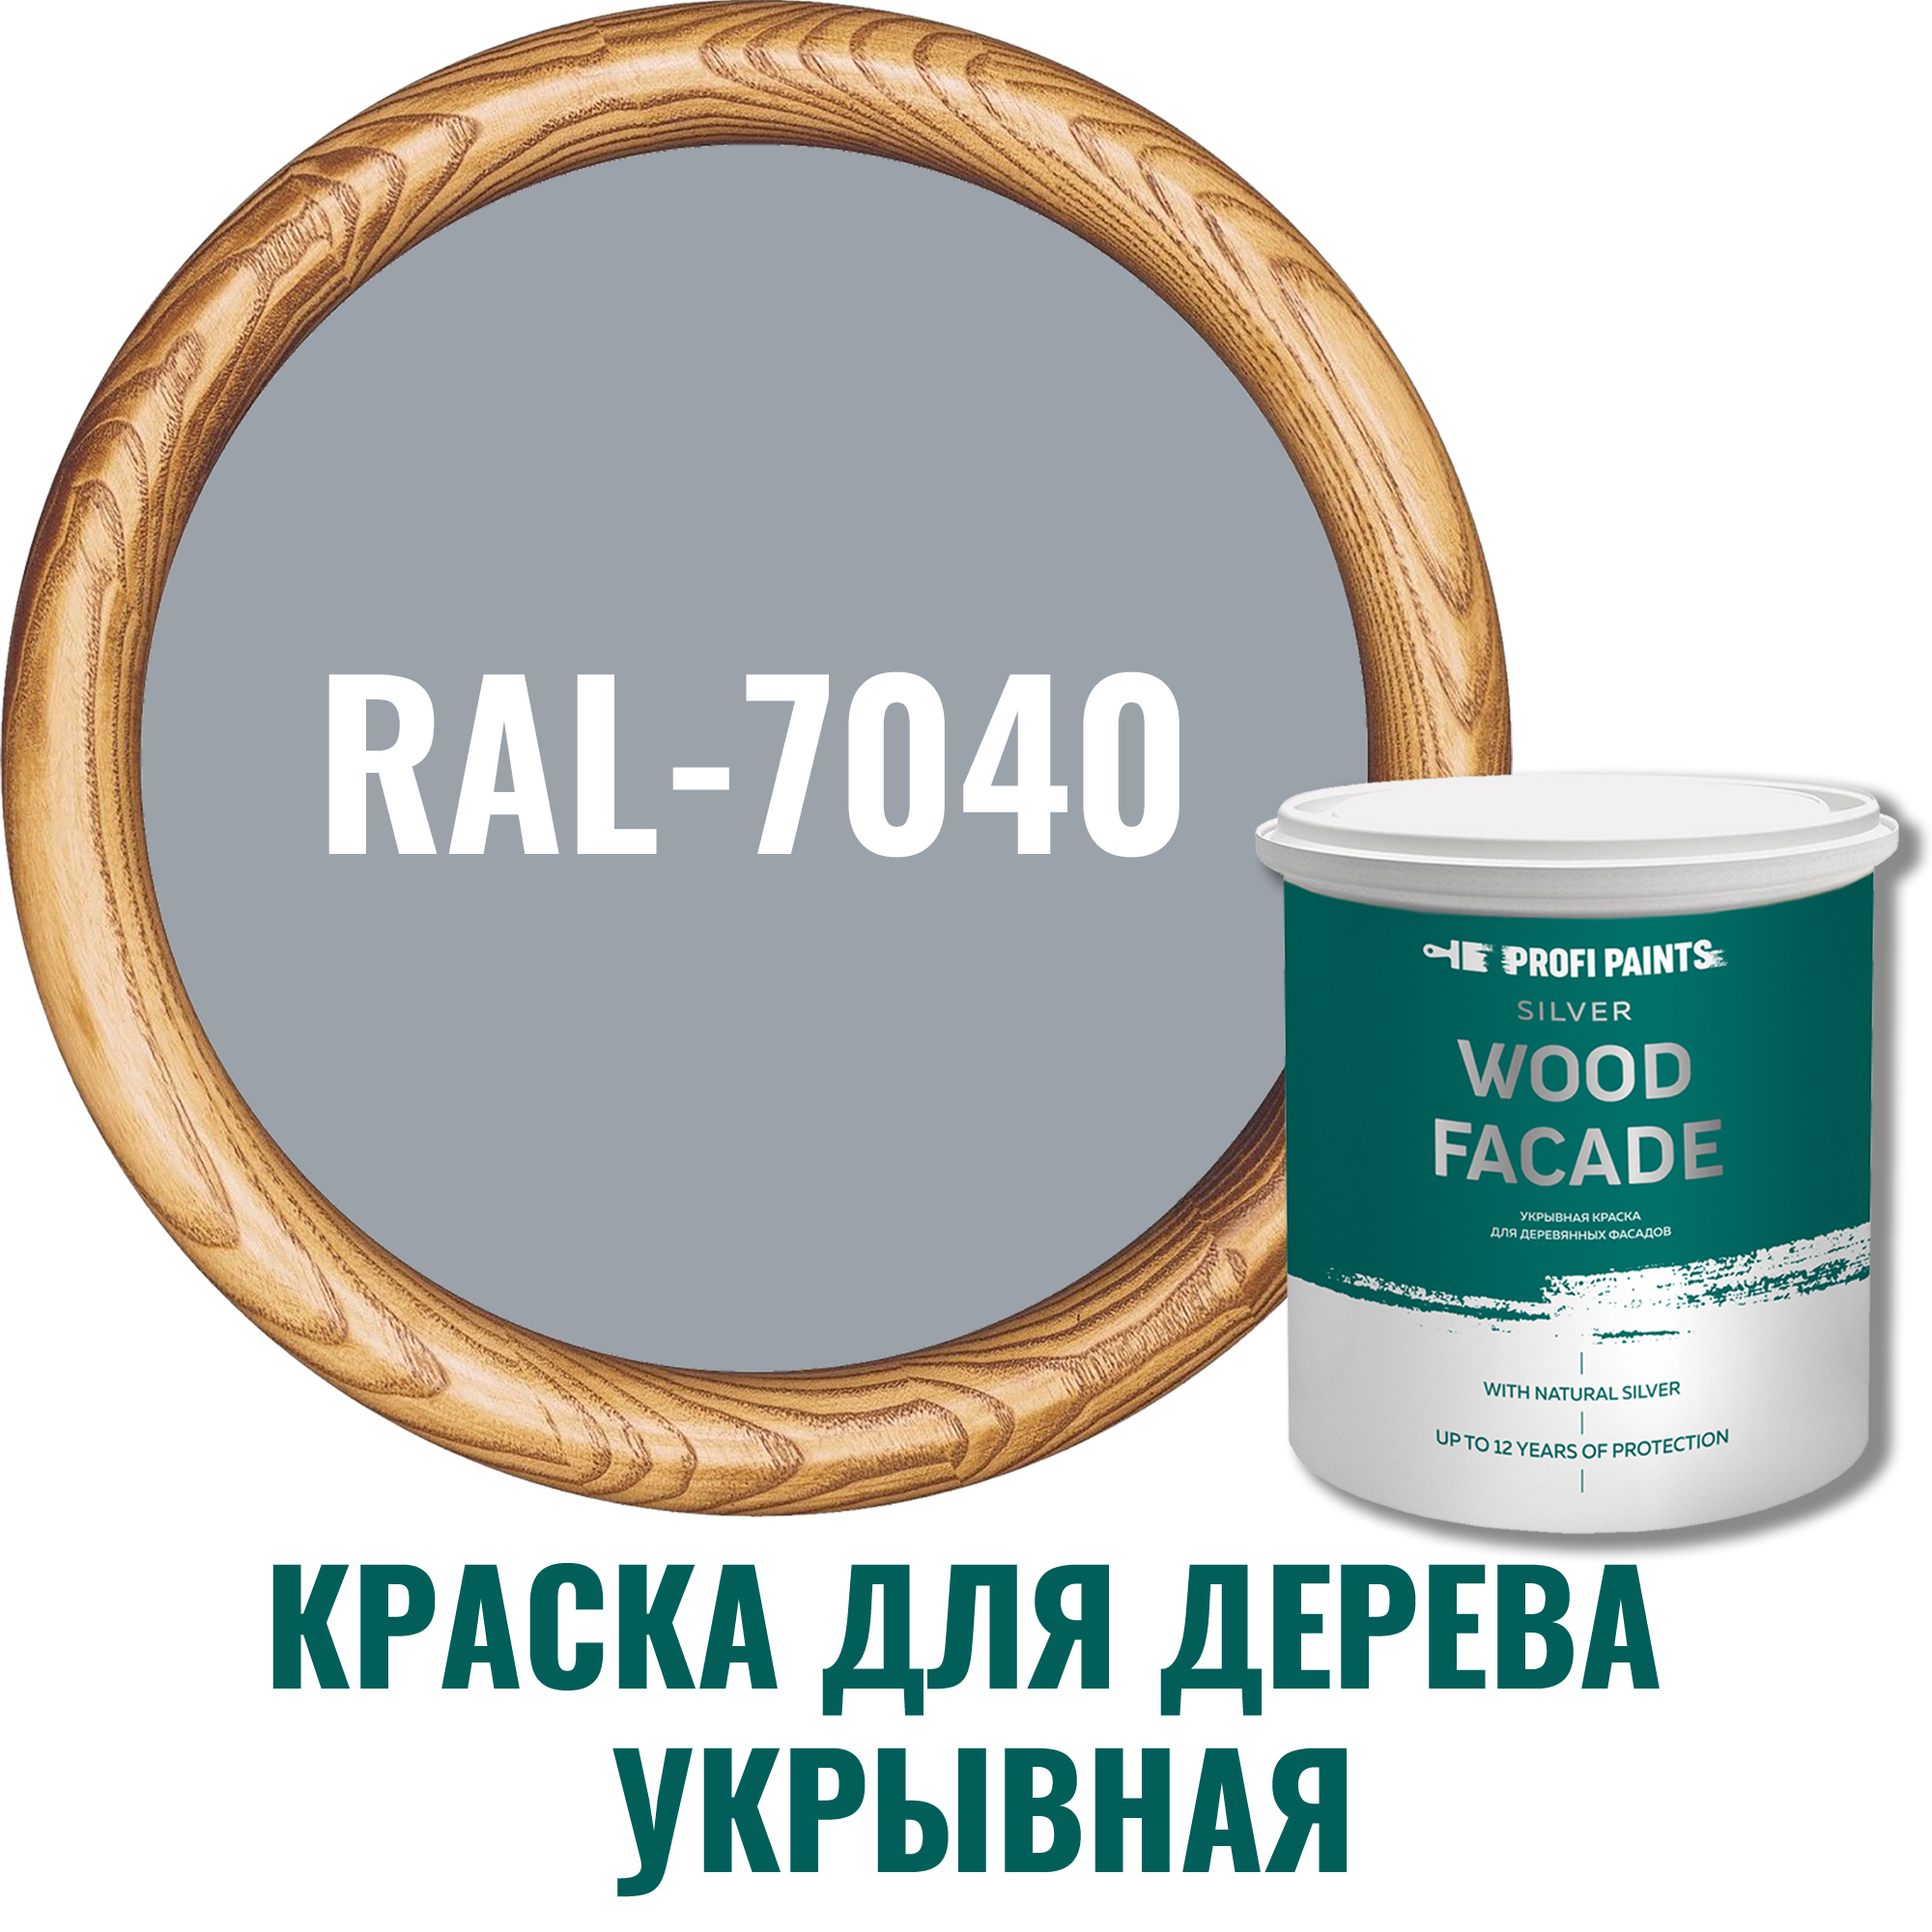 91106575 Краска для дерева 11215_D SILVER WOOD FASADE цвет RAL-7040 серый 0.9 л STLM-0487573 PROFIPAINTS